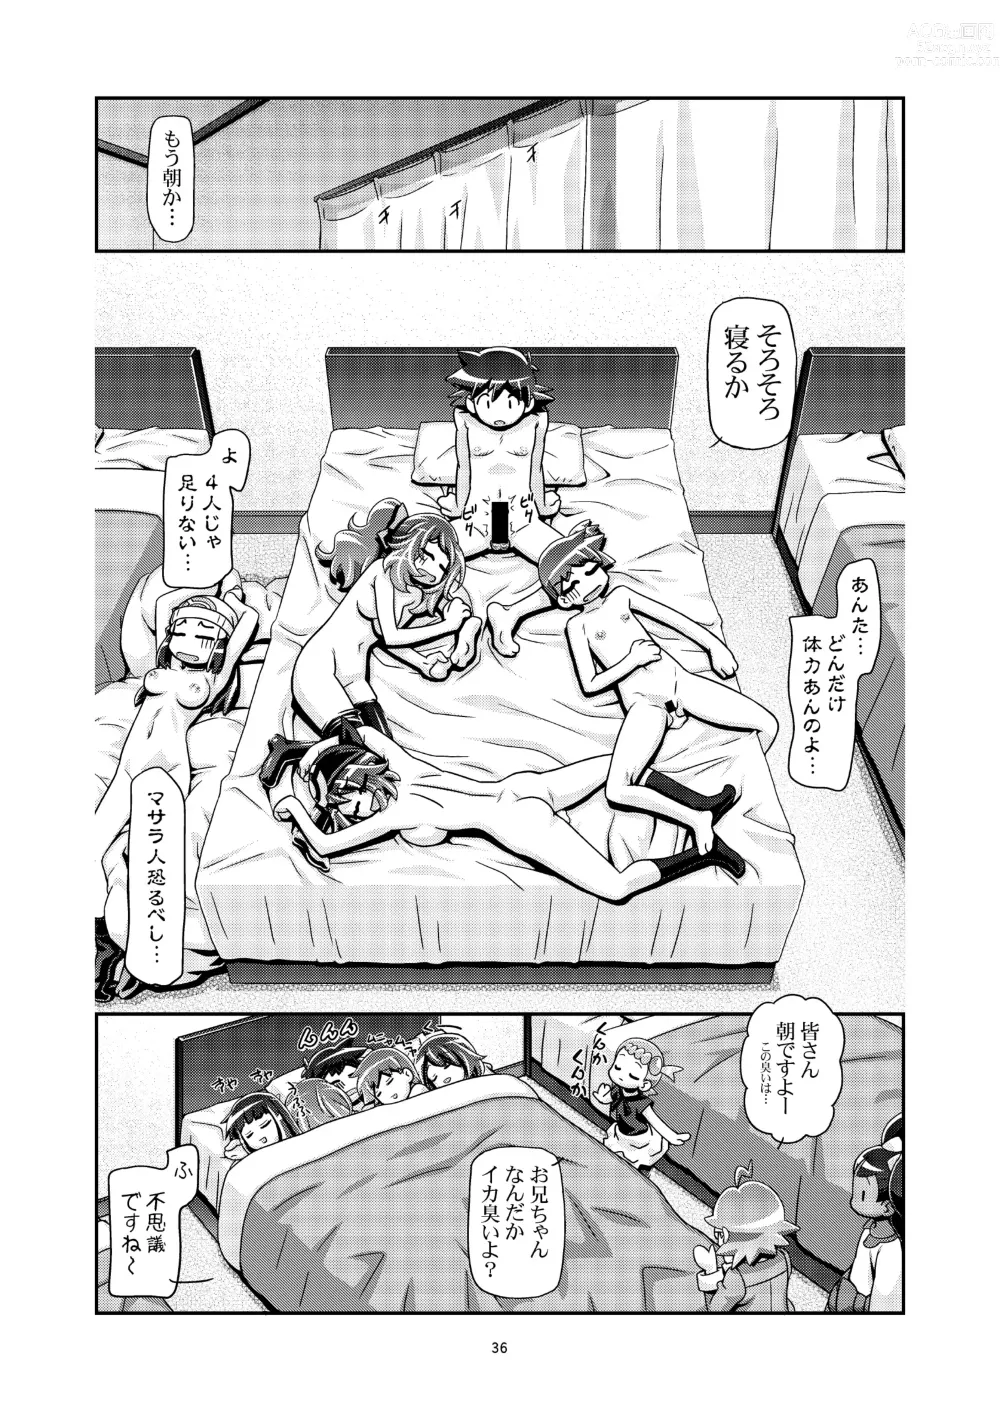 Page 35 of doujinshi PM GALS XY 2